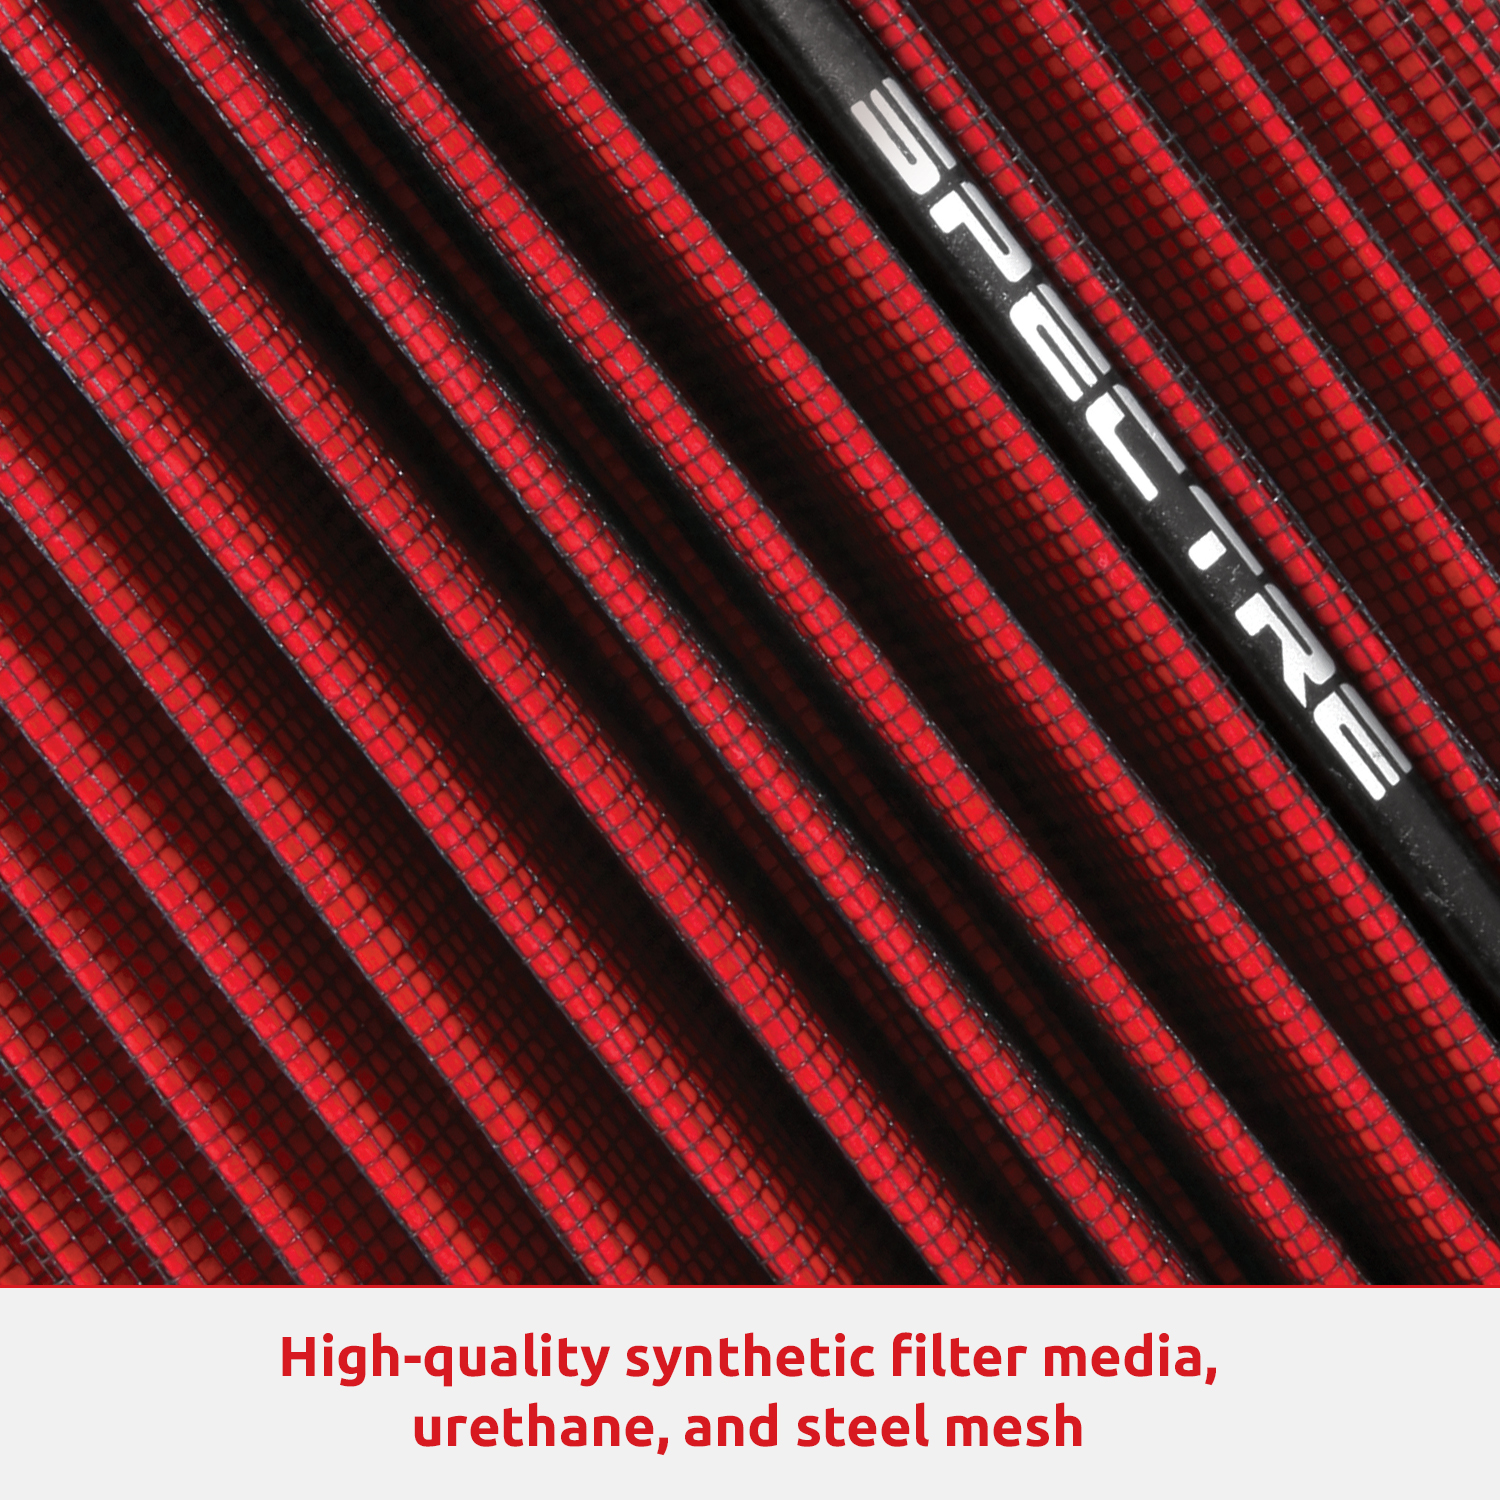 値引きする Spectre 1500 Performance COLD Air 19-21 Intake RAM DODGE RED Kit:  High For Performance Desgined to 1500 Increase KIT Horsepower and  Torque: Fits SHIELD 2013-2018 DODGE/RAM (1500) INTAKE 1500 SPE-9016 